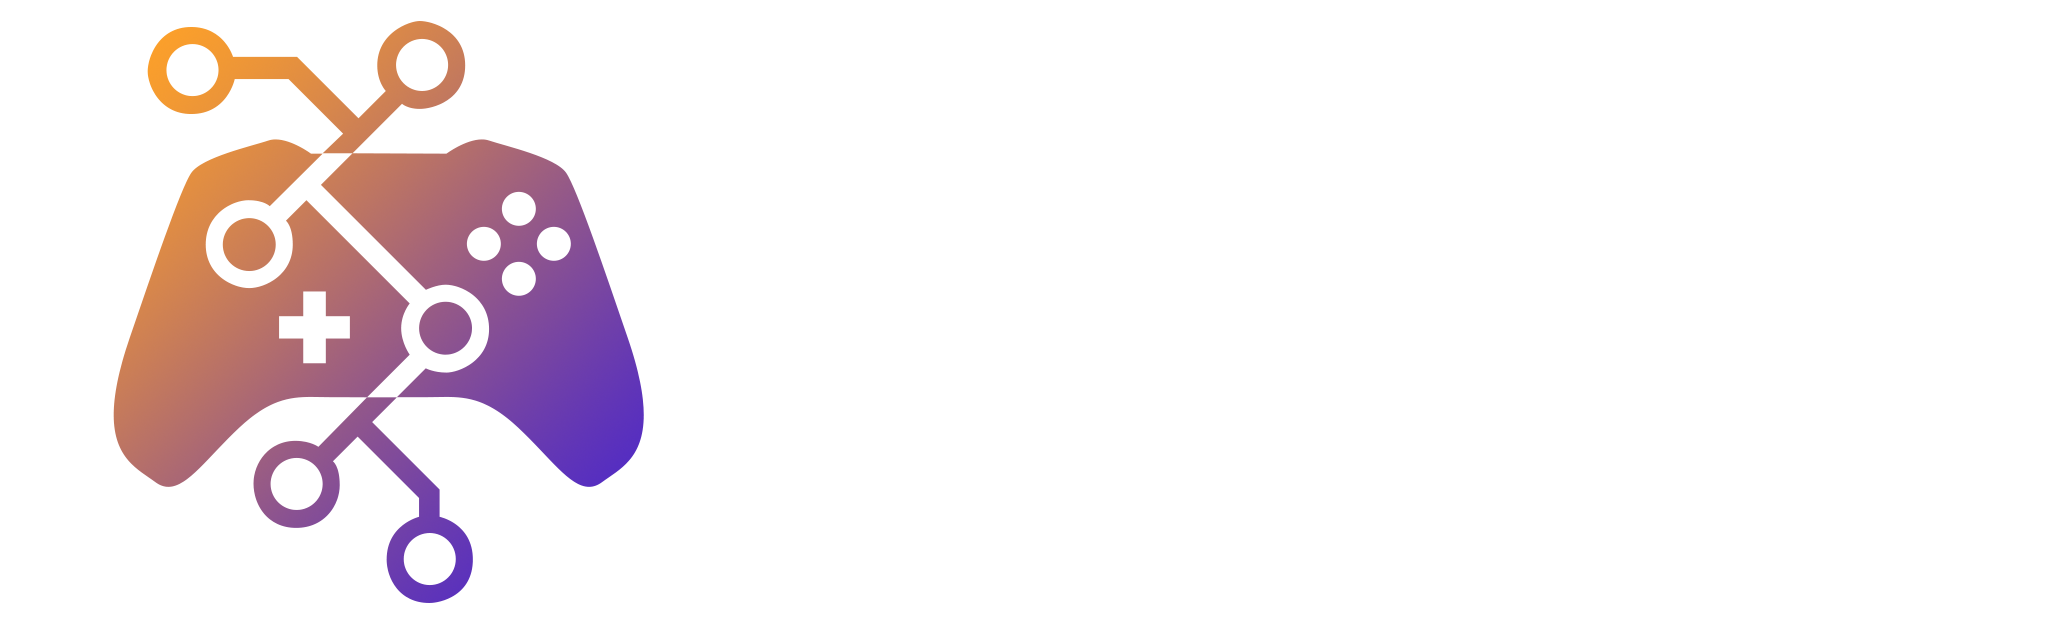 Hub de Games São José dos Campos